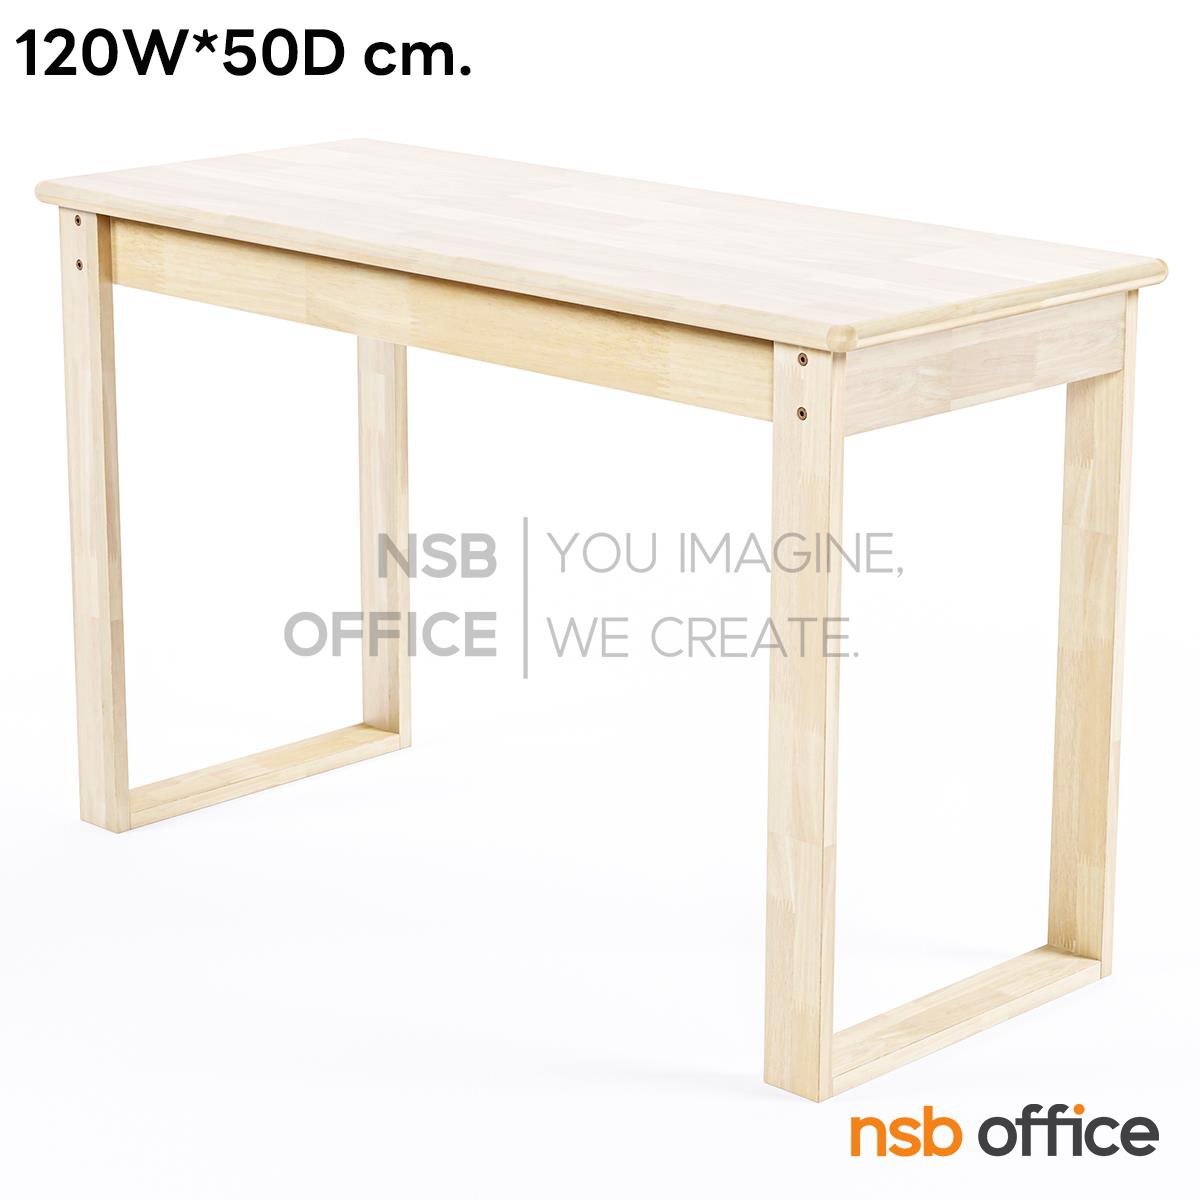 G20A030:โต๊ะทำงานไม้ยางพาราล้วน สูง 75 cm. รุ่น Mirchin (เมอร์ชิน)   